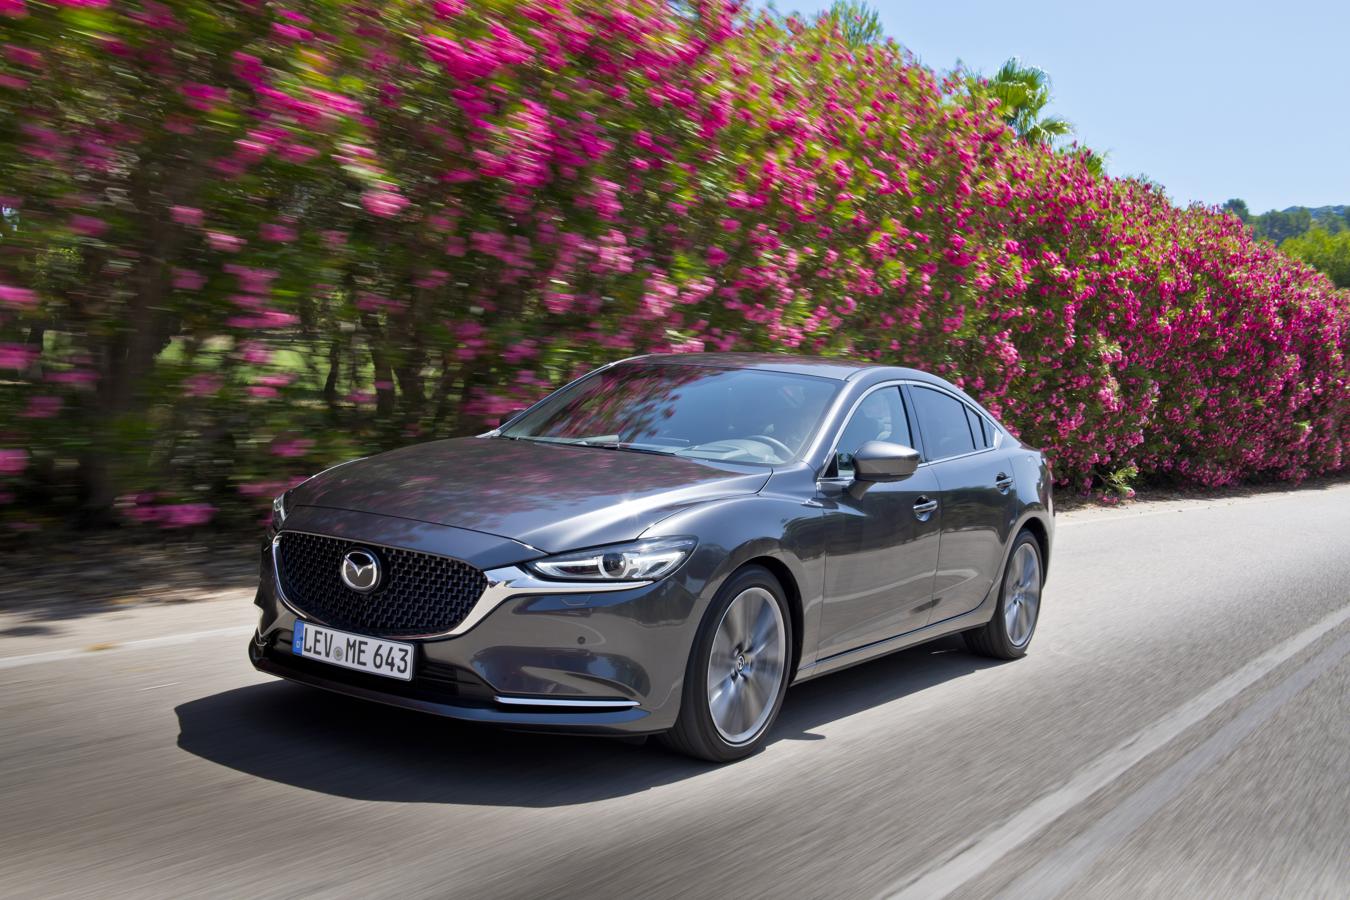 Nuevo Mazda 6 2018: Sofisticación nipona para asaltar el mercado Premium